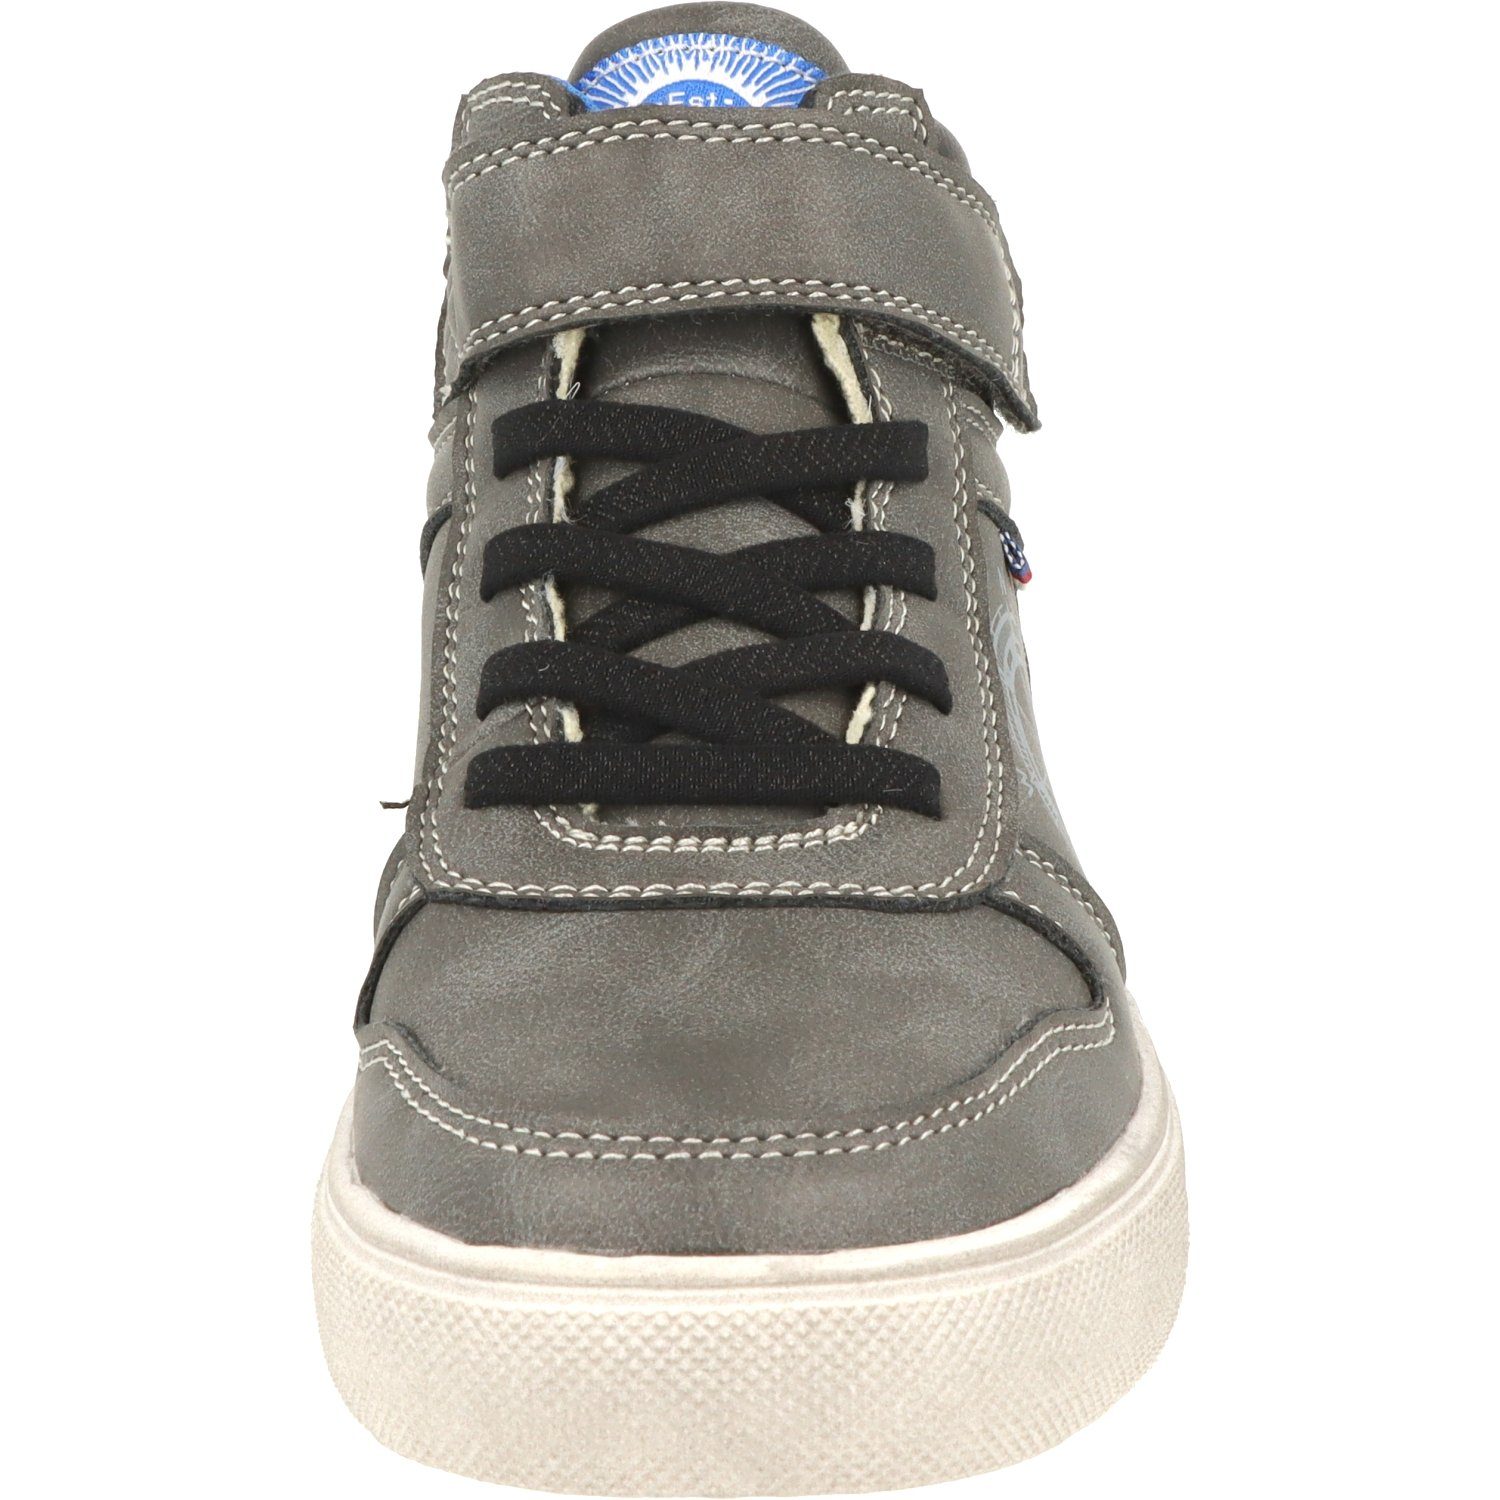 Schuhe Jungen Sneaker Wasserabweisend Hi-Top Dk.Grey Indigo Schnürschuhe 451-074